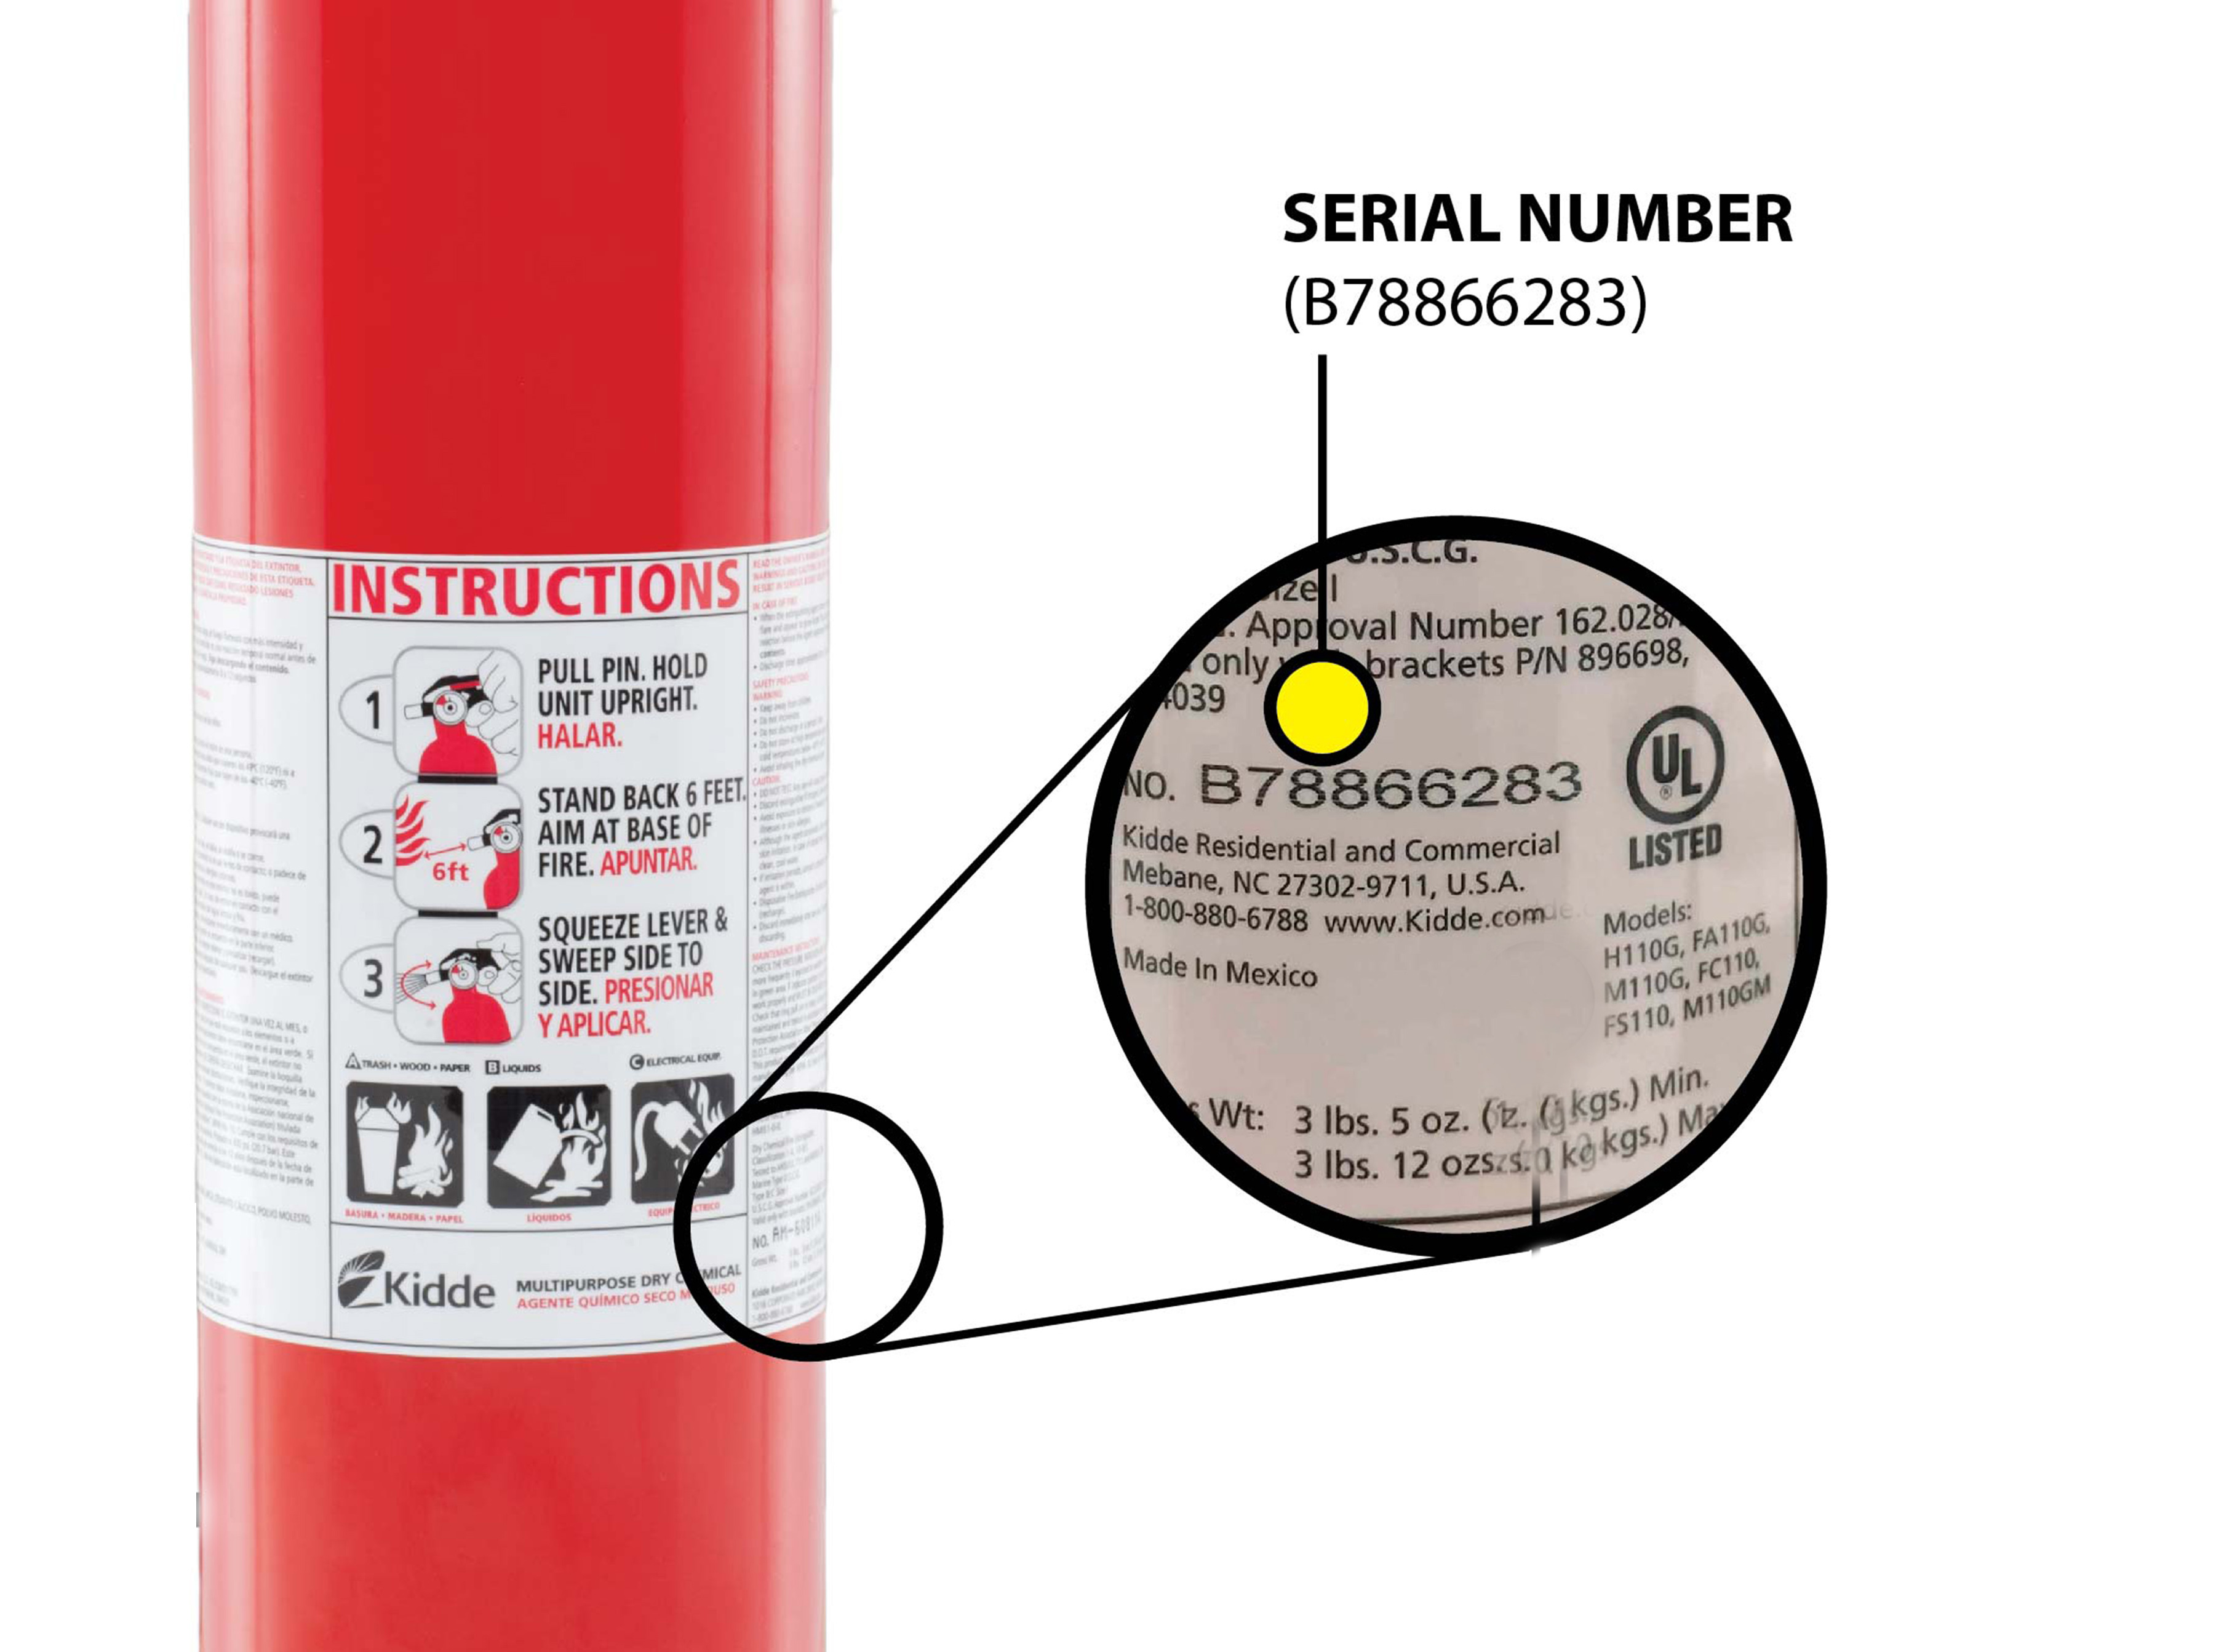 kidde fire extinguisher serial number